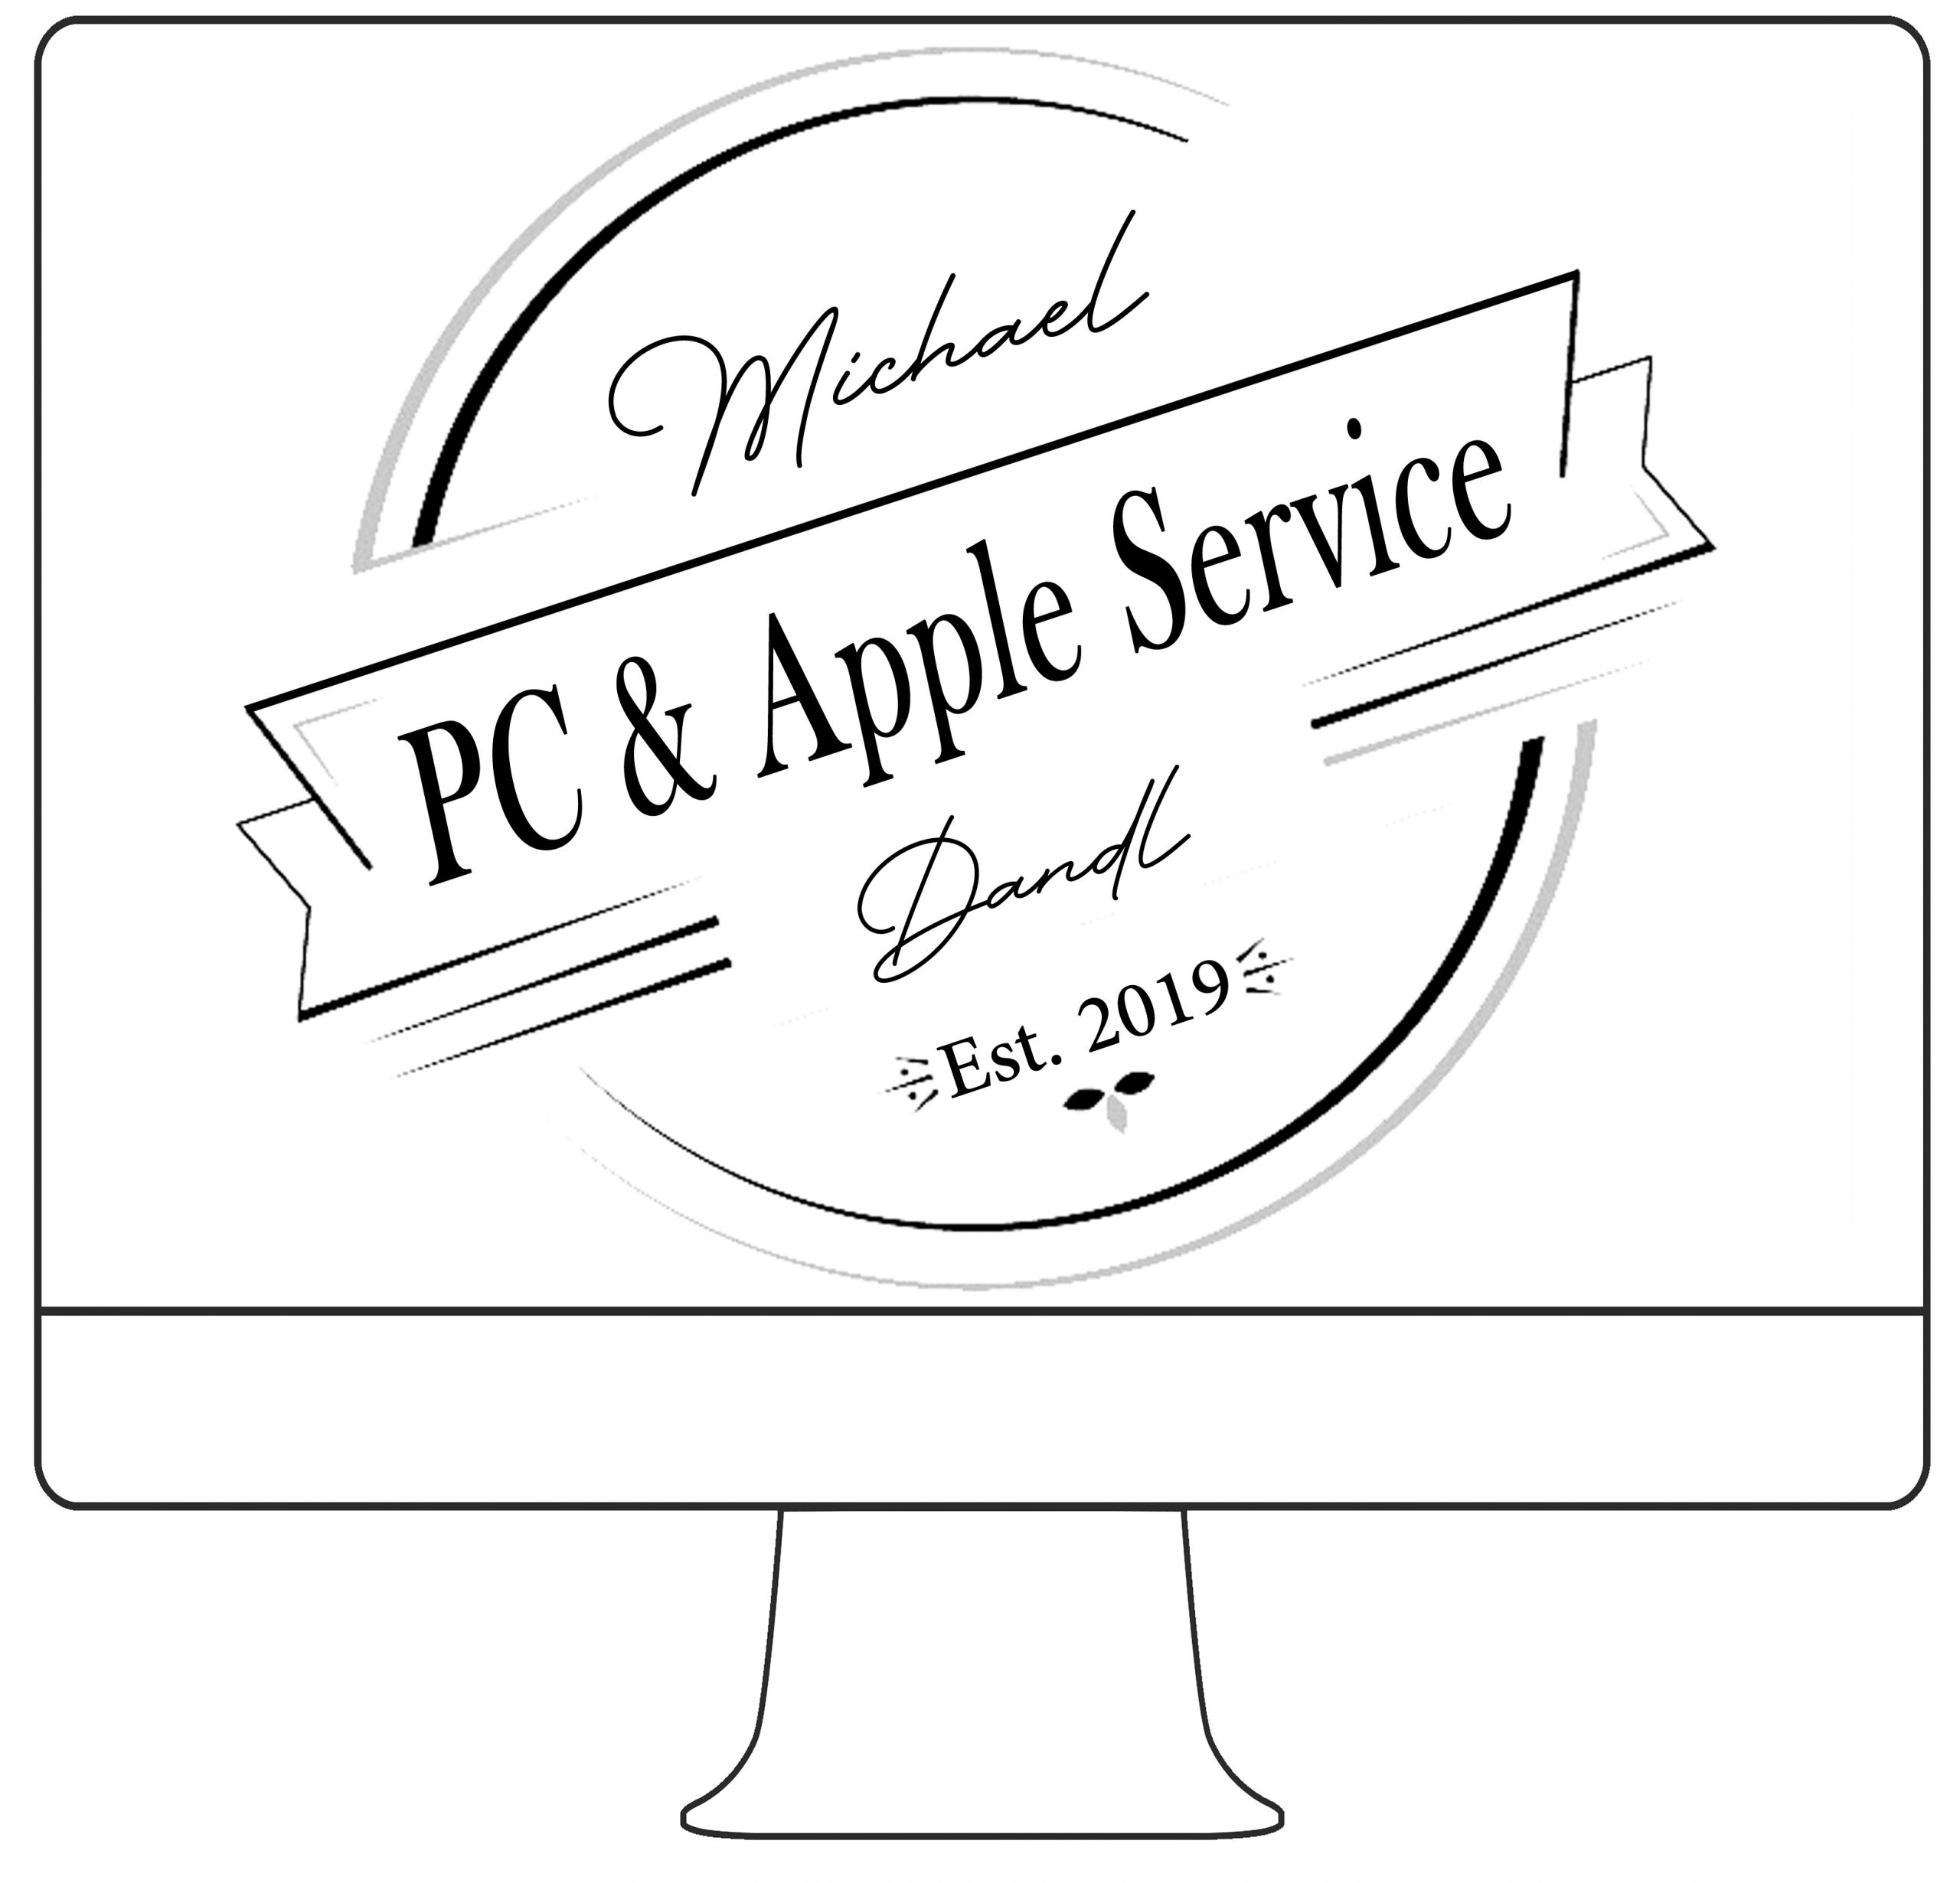 PC und Apple Service